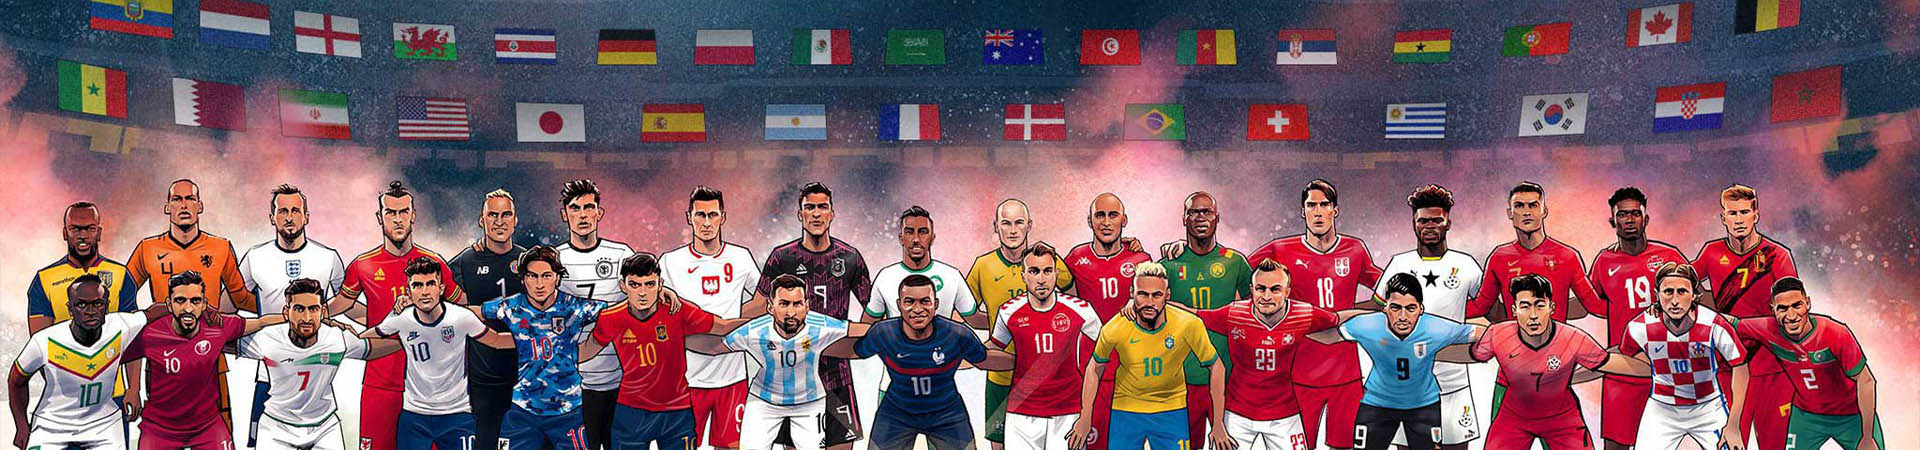 تور جام جهانی قطر 2022 نهال گشت